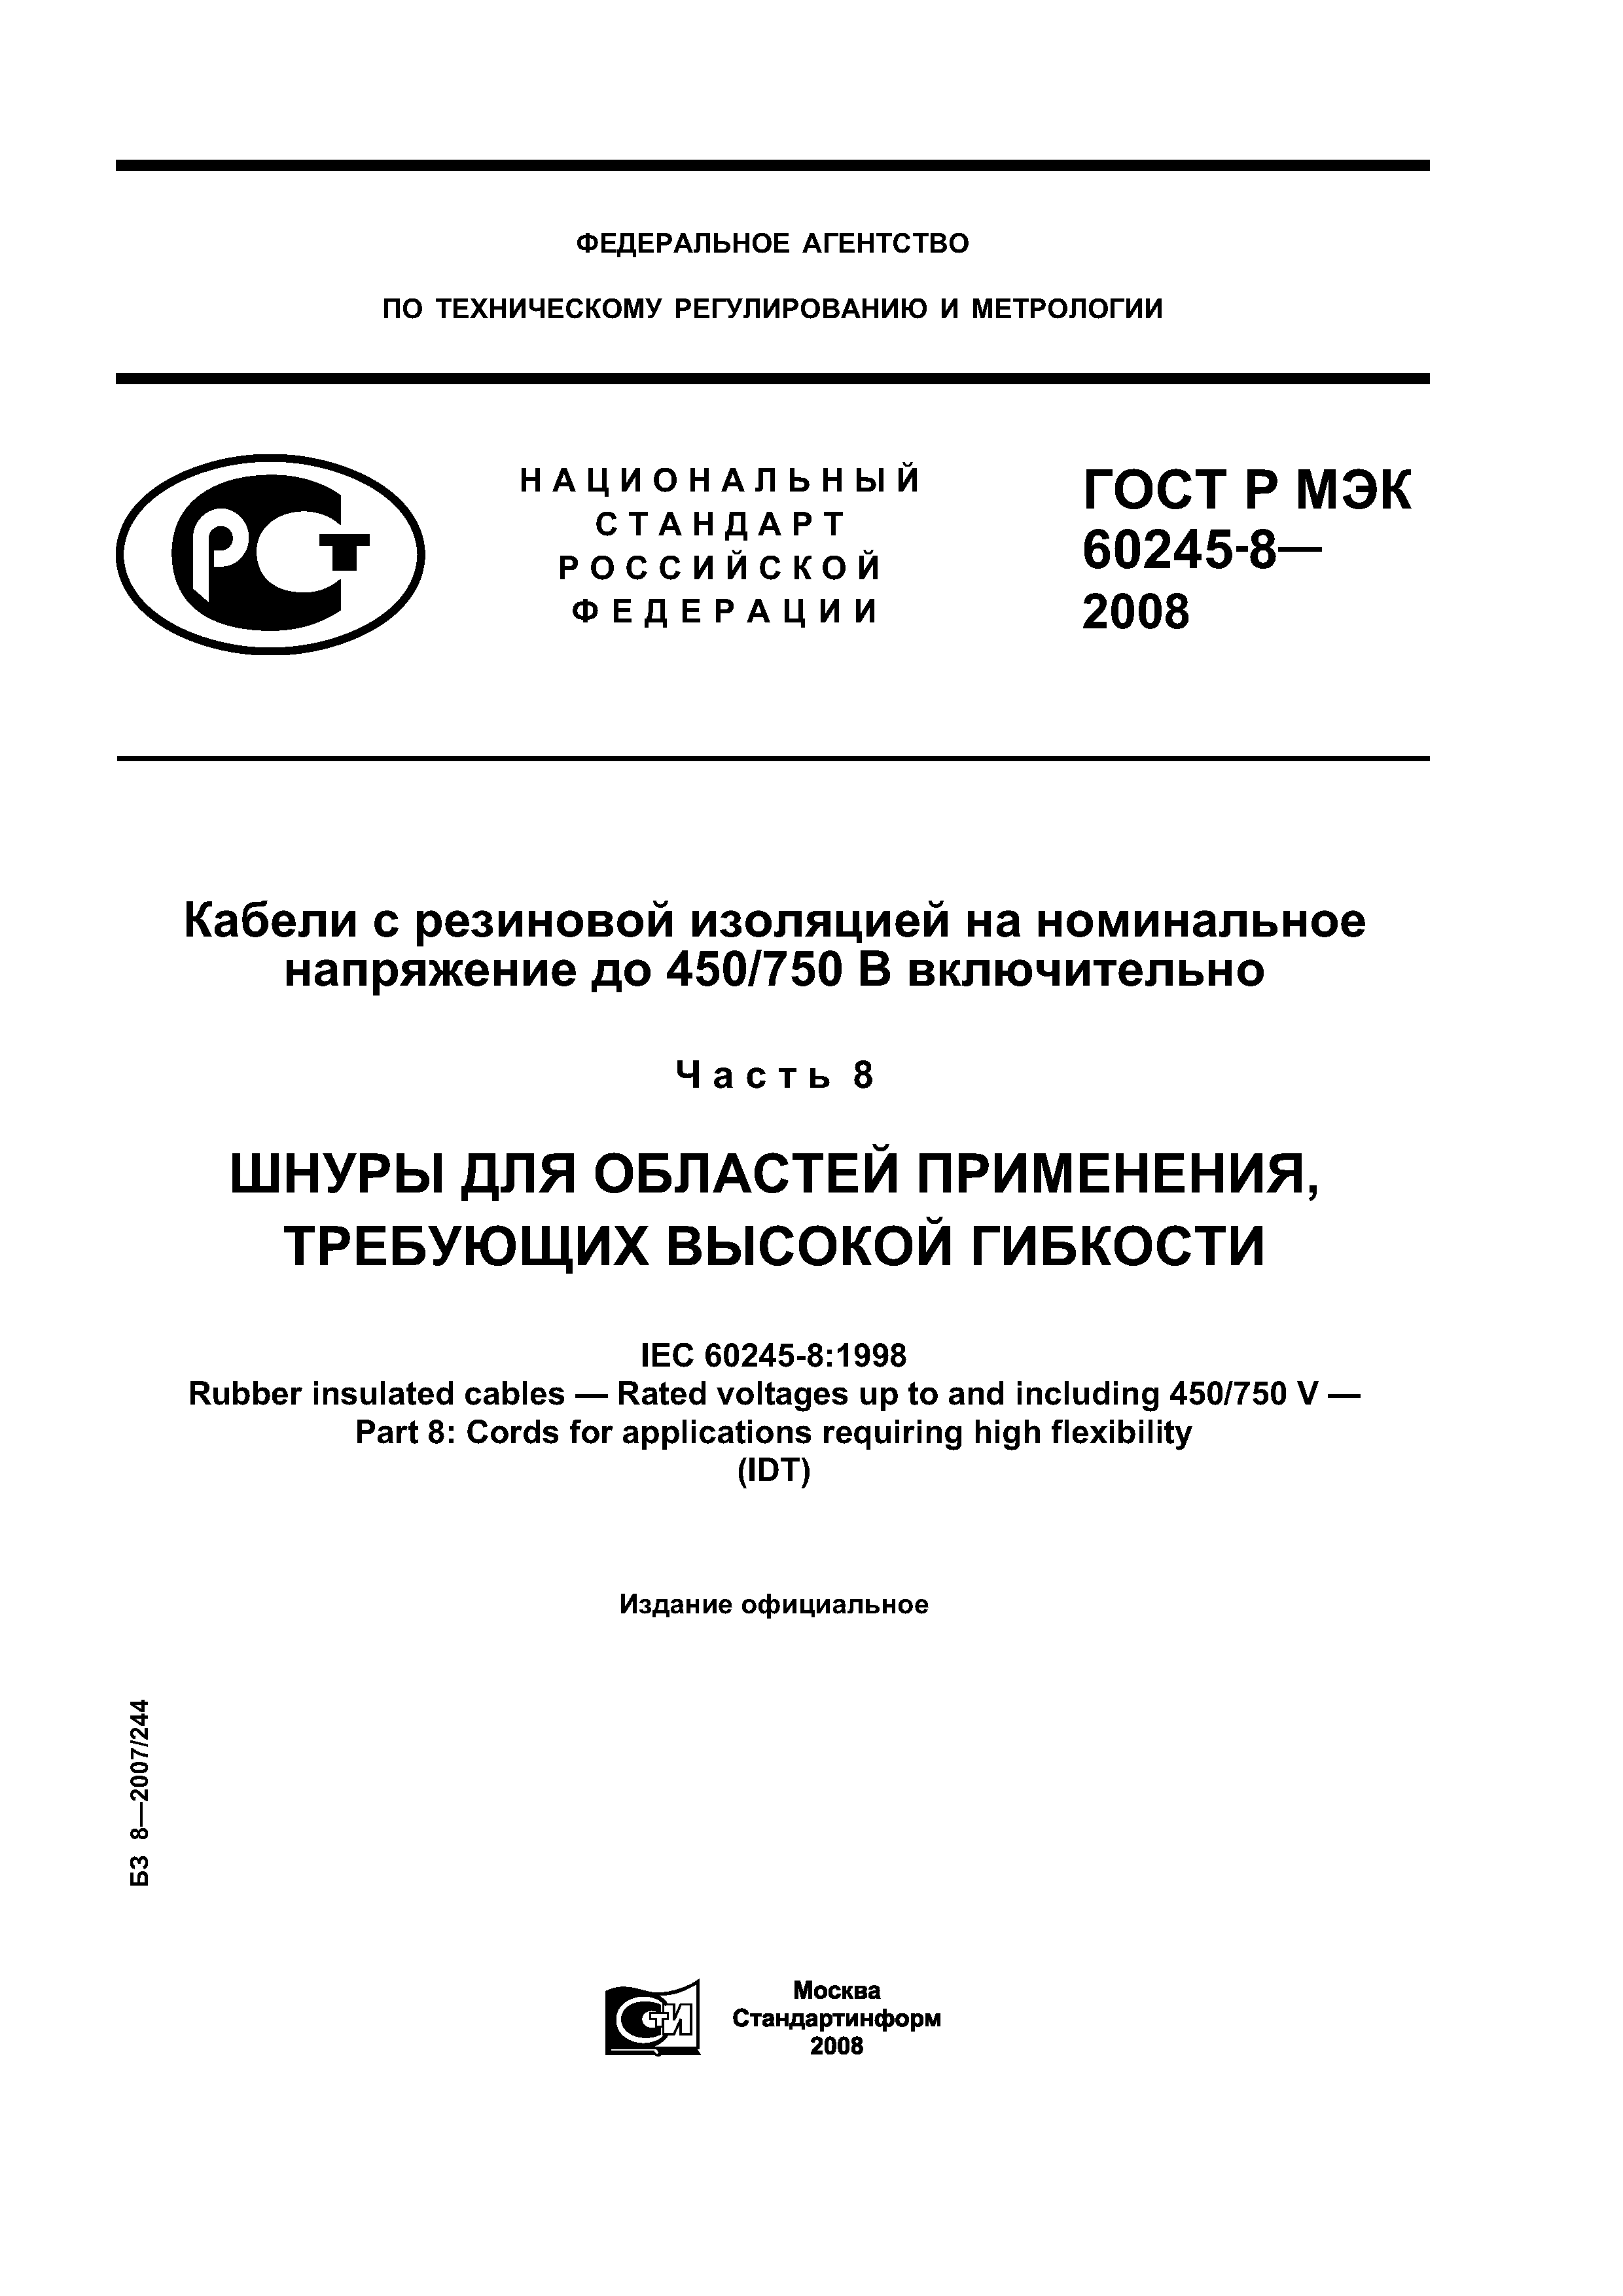 ГОСТ Р МЭК 60245-8-2008